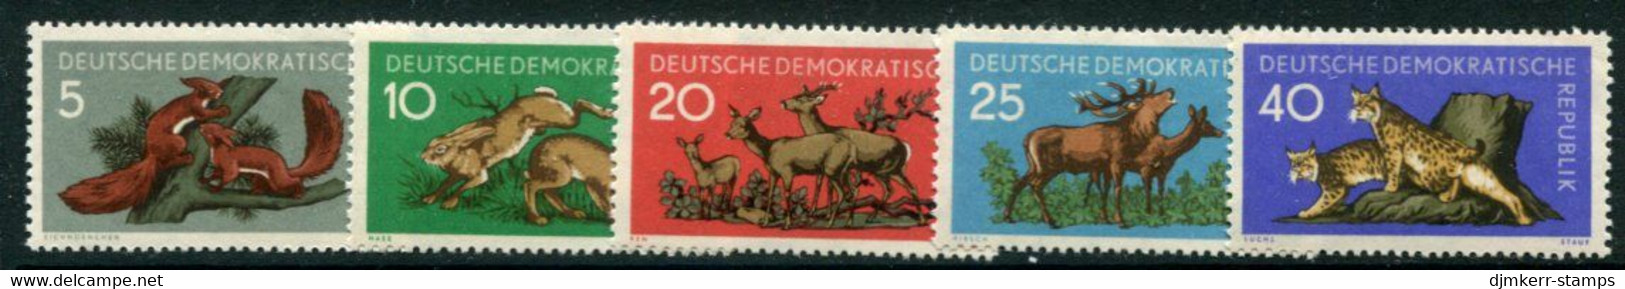 DDR / E. GERMANY 1959 Forest Animals MNH / **.  Michel  737-41 - Ungebraucht